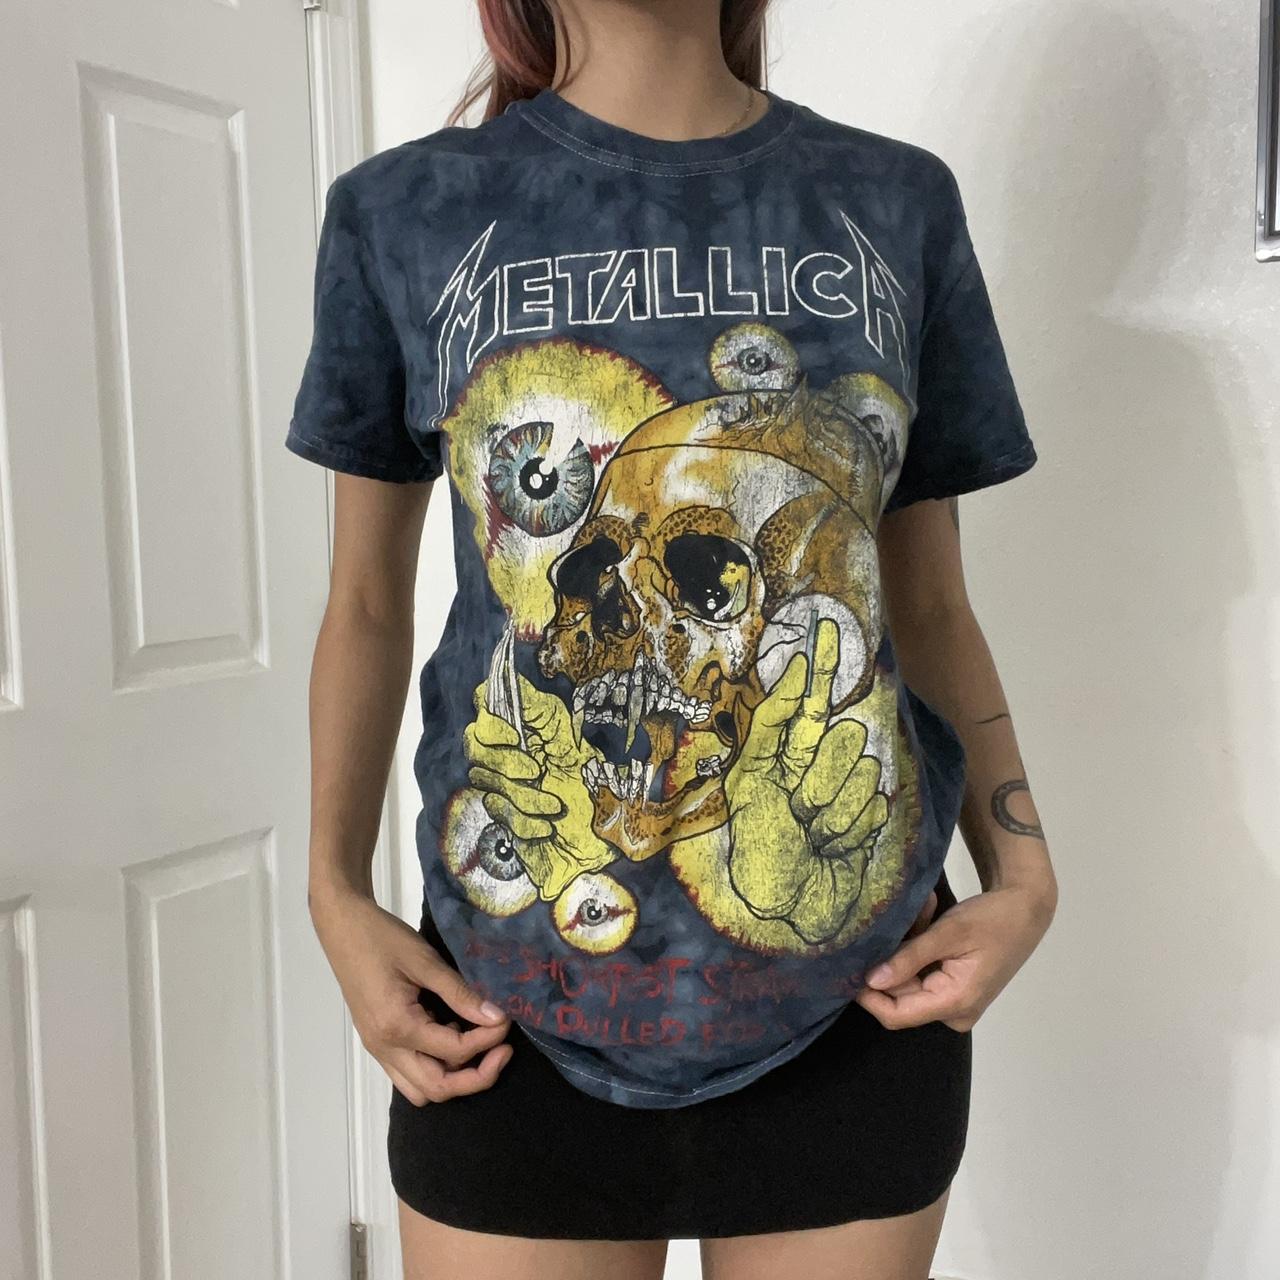 Metallica T-Shirt 😝 #metallica #bandt #grunge #90s - Depop